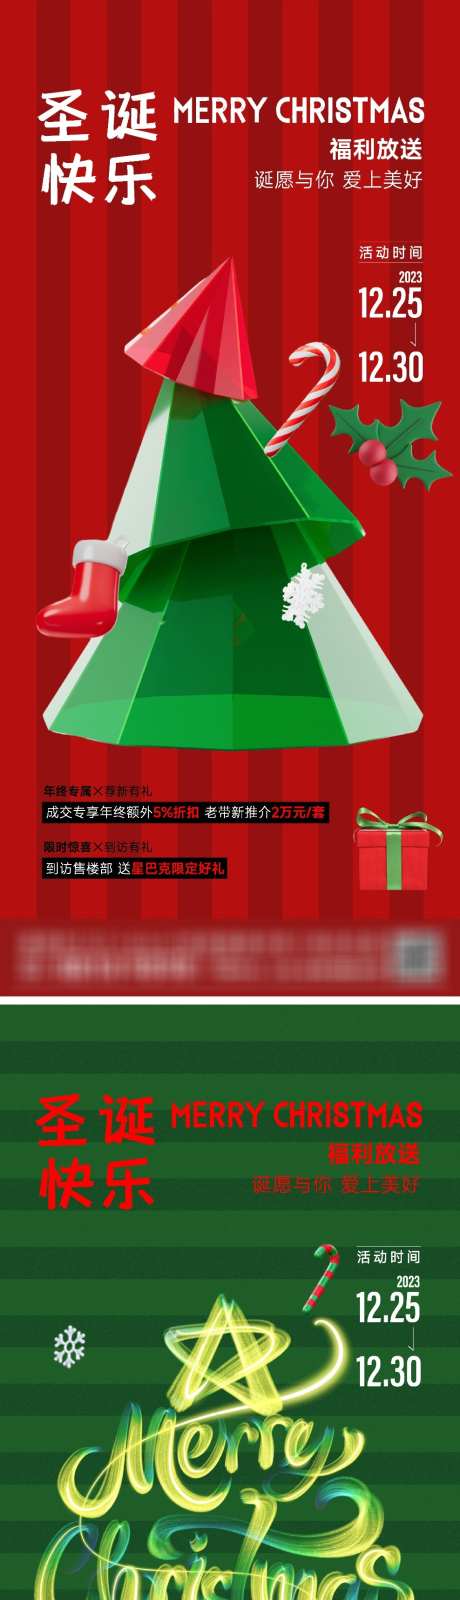 圣诞活动海报_源文件下载_PSD格式_720X1560像素-节日,绿色,红色,平安夜,圣诞树,海报,活动,圣诞节-作品编号:2023122421011982-志设-zs9.com